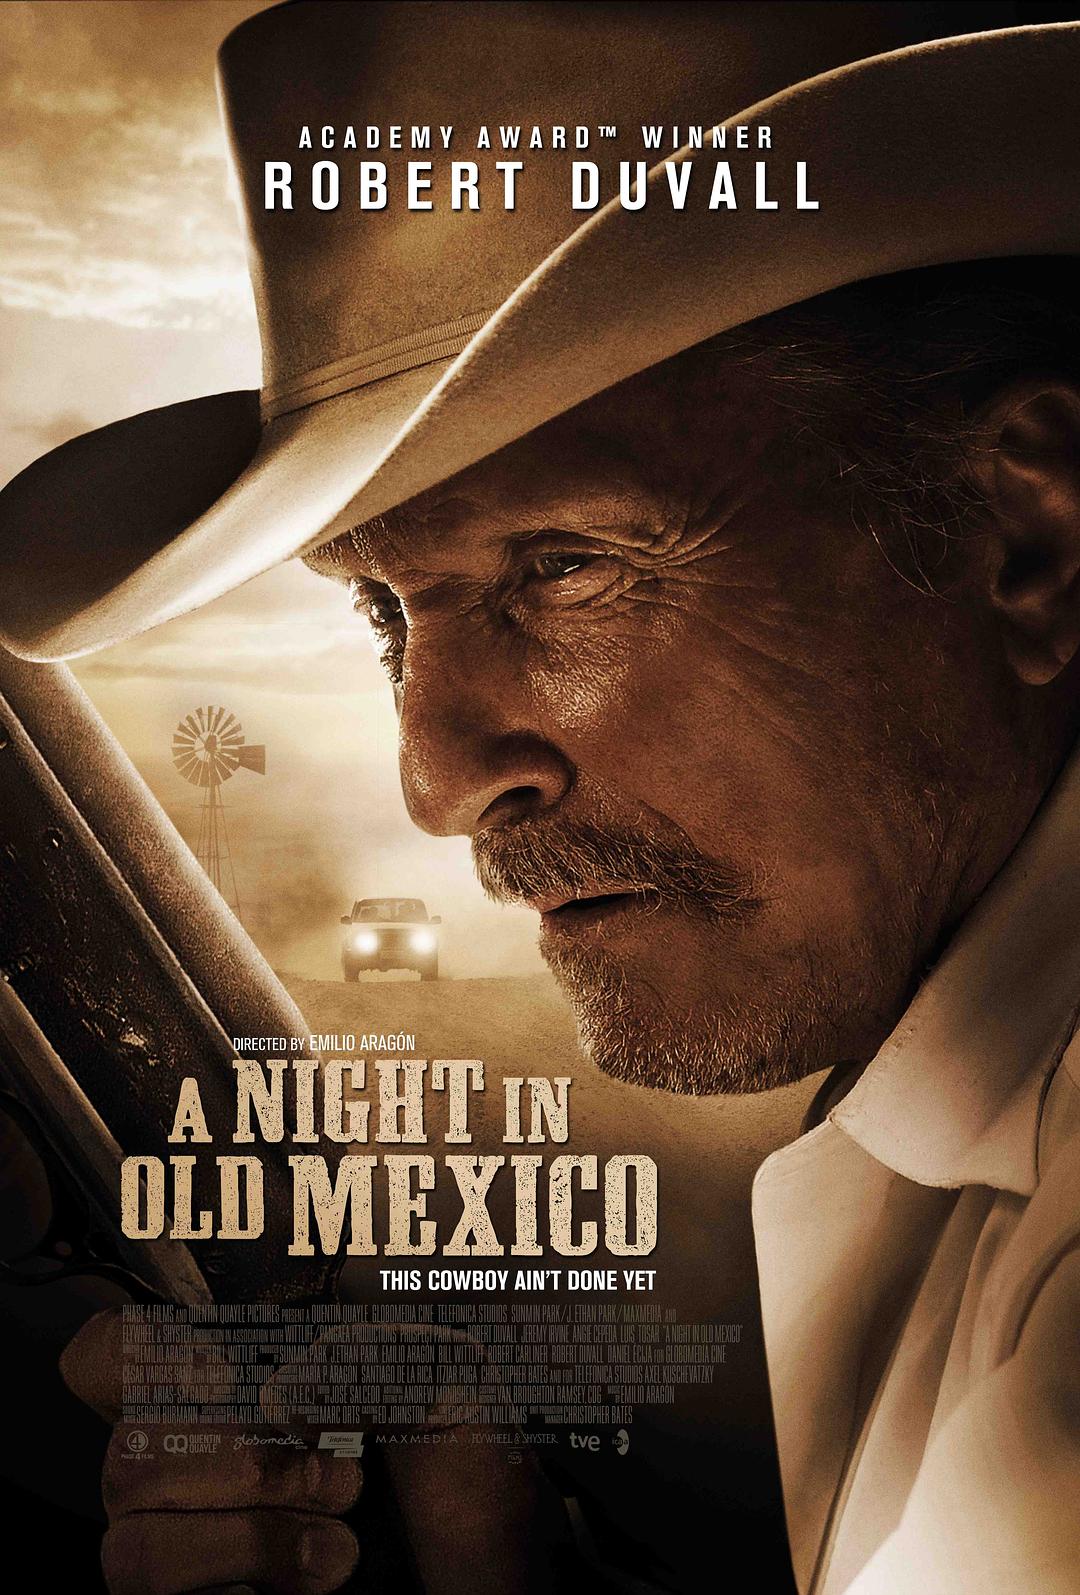 īһҹ/īһҹ A.Night.in.Old.Mexico.2013.1080p.BluRay.x264-NODLABS 6.56GB-1.png